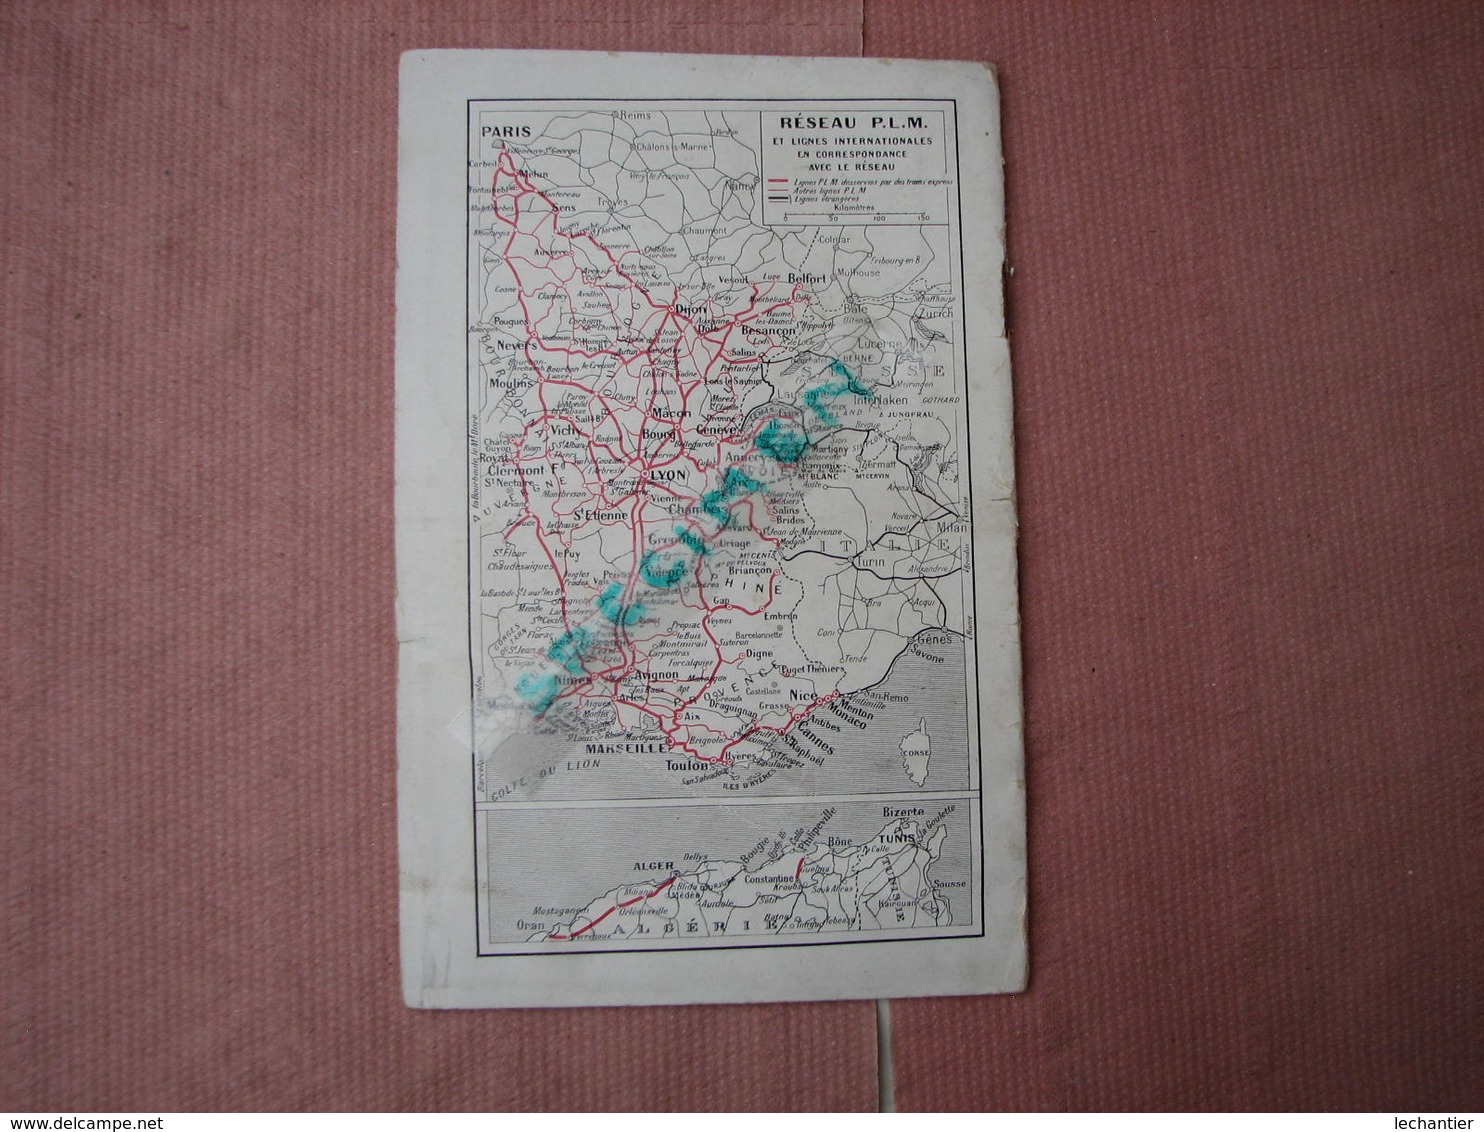 Chemin de fer de Paris et à la Méditéranée (pour touristes Allemands) DAS RHONE TAL vers 1920